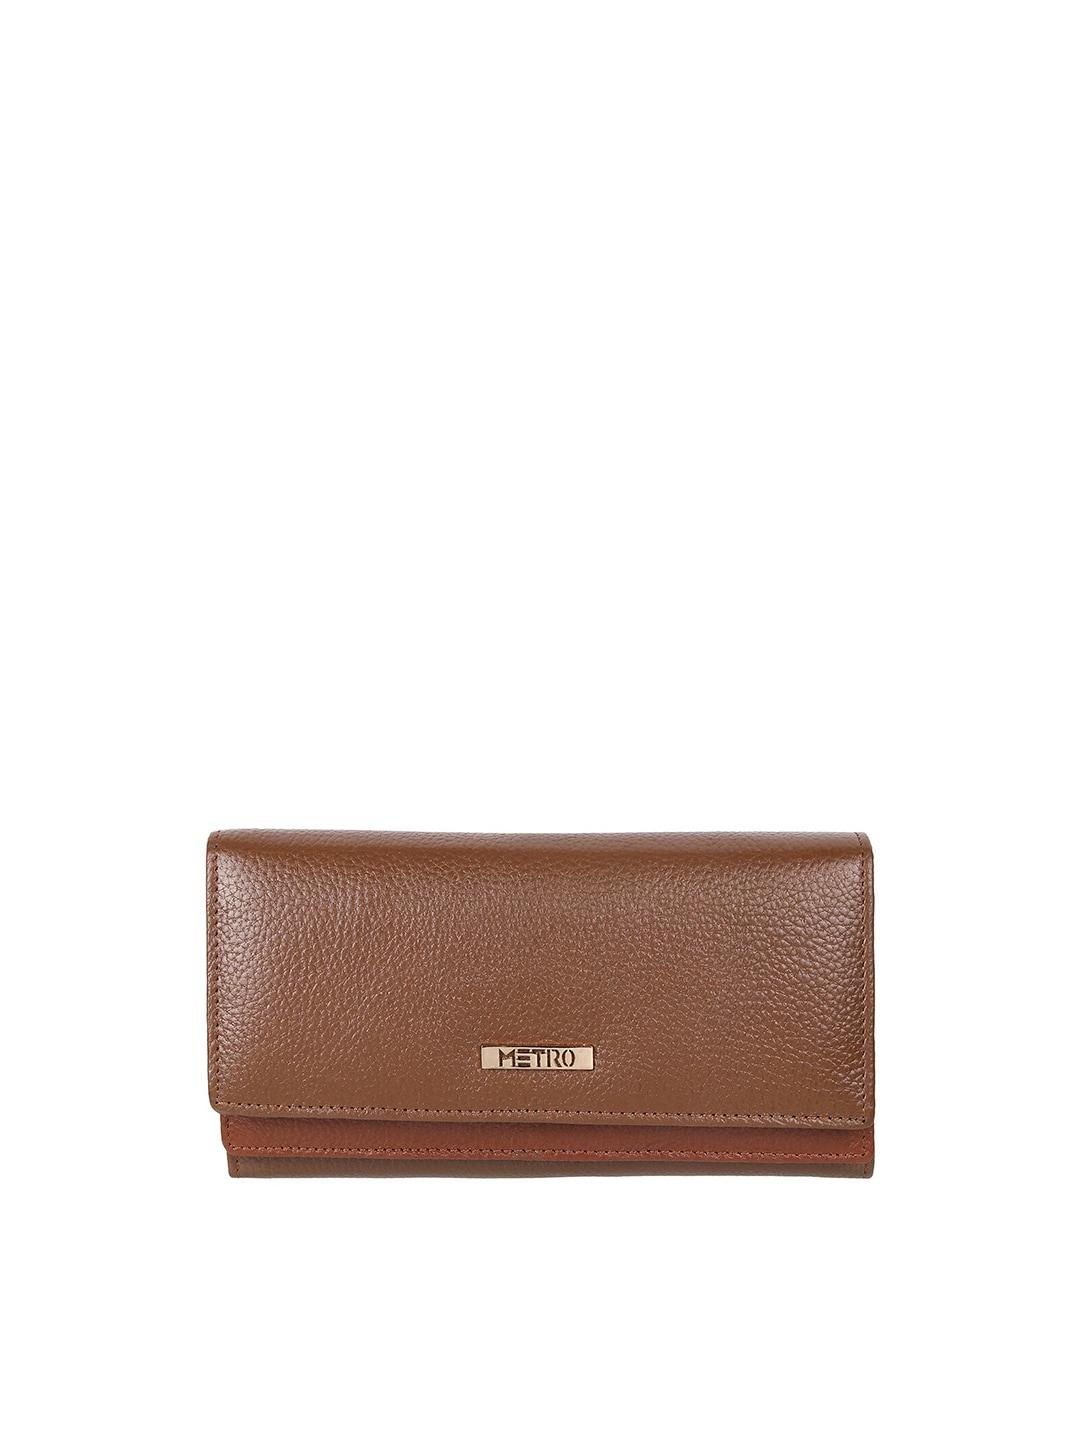 metro women leather two fold wallet